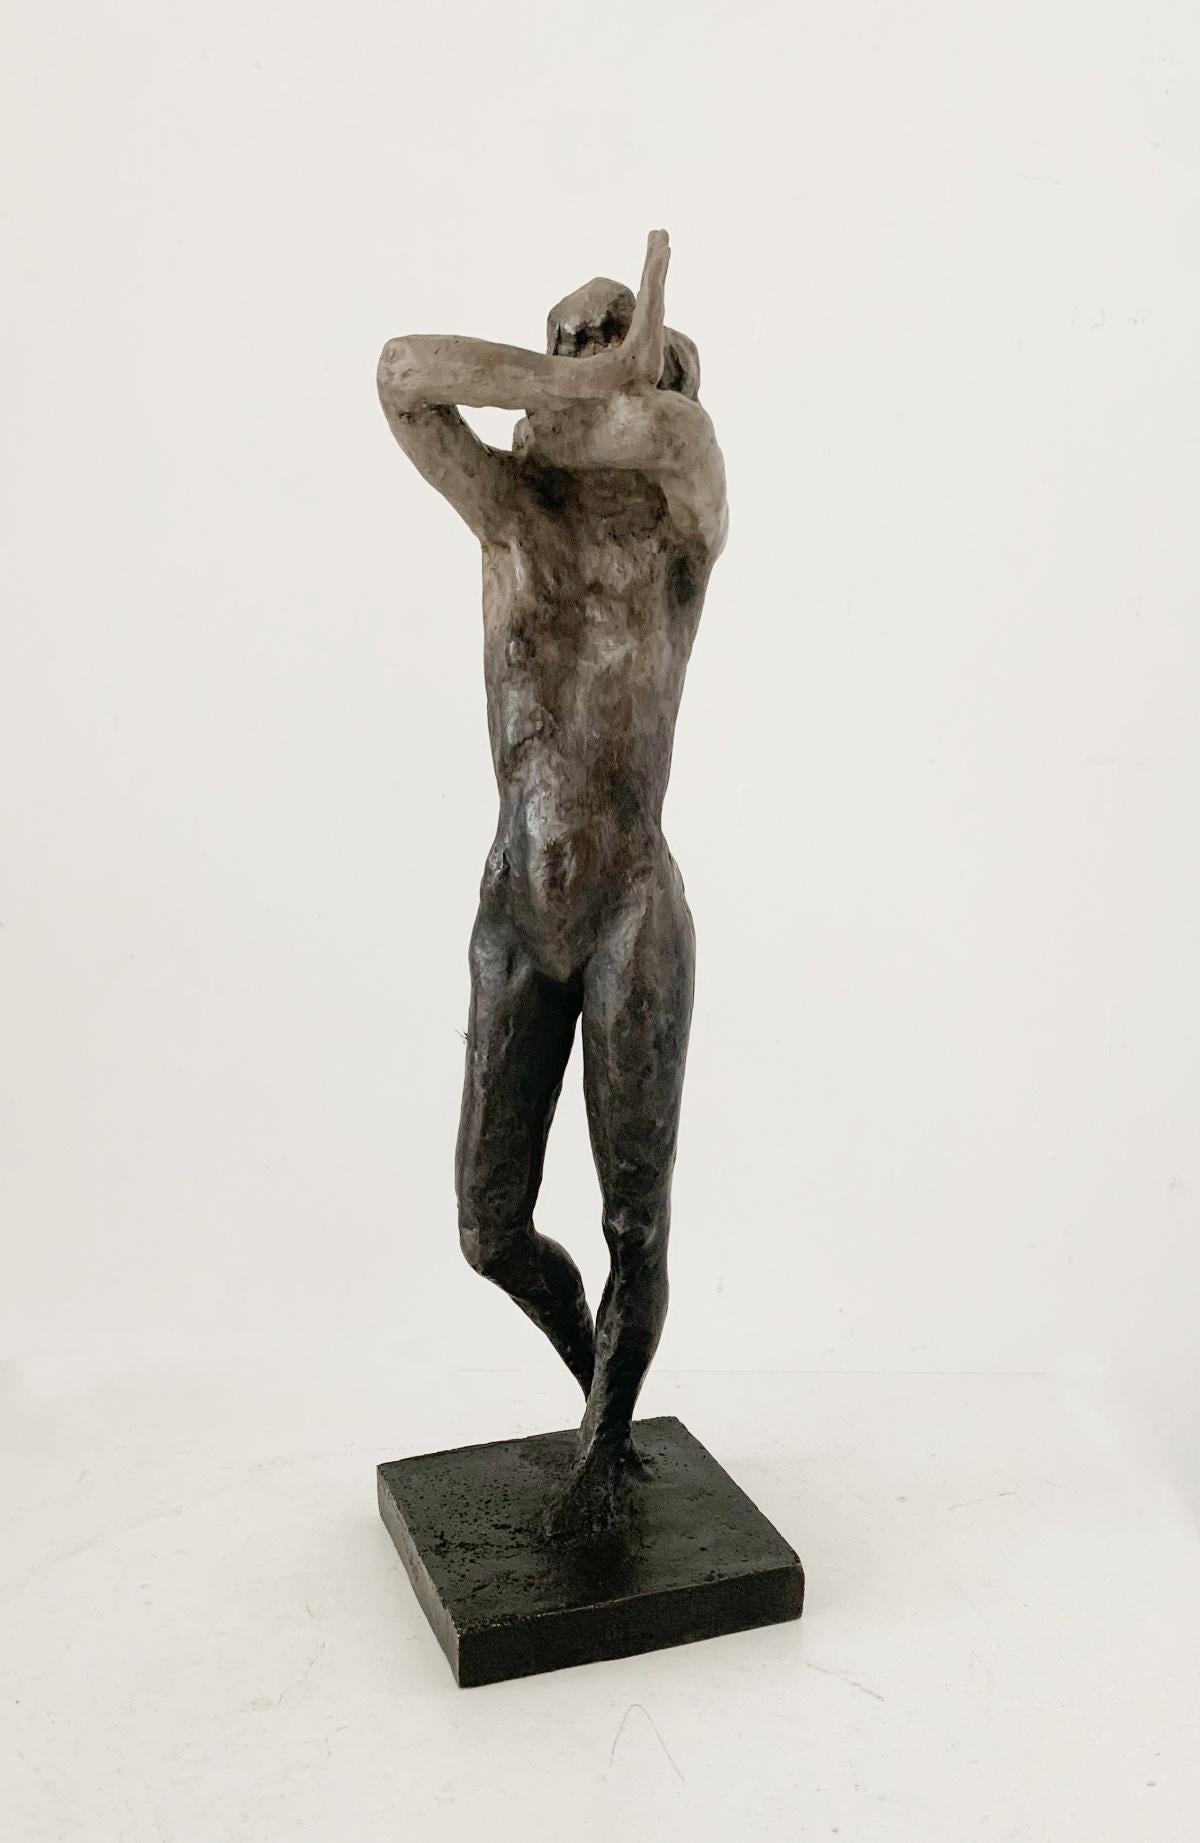 Figurative Sculpture Olga Prokop-Misniakiewicz - Une femme. Sculpture figurative contemporaine en bronze, art polonais, édition limitée